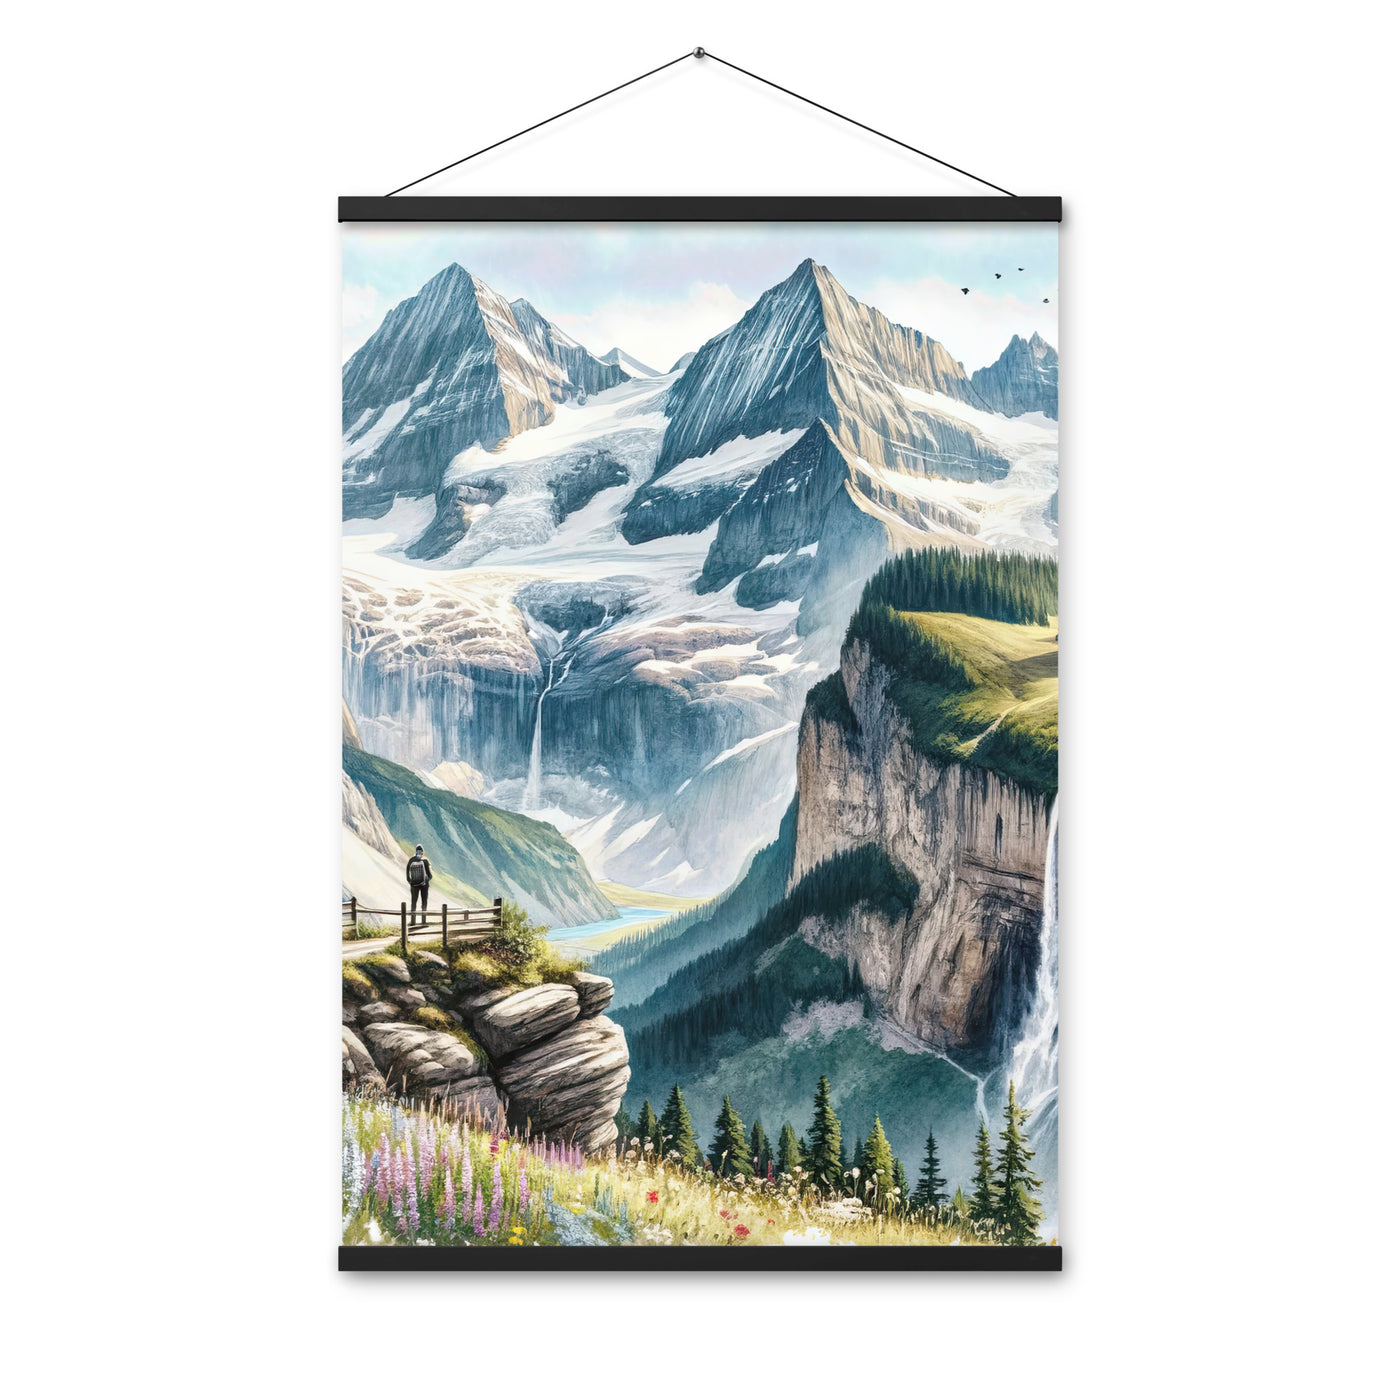 Aquarell-Panoramablick der Alpen mit schneebedeckten Gipfeln, Wasserfällen und Wanderern - Premium Poster mit Aufhängung wandern xxx yyy zzz 61 x 91.4 cm